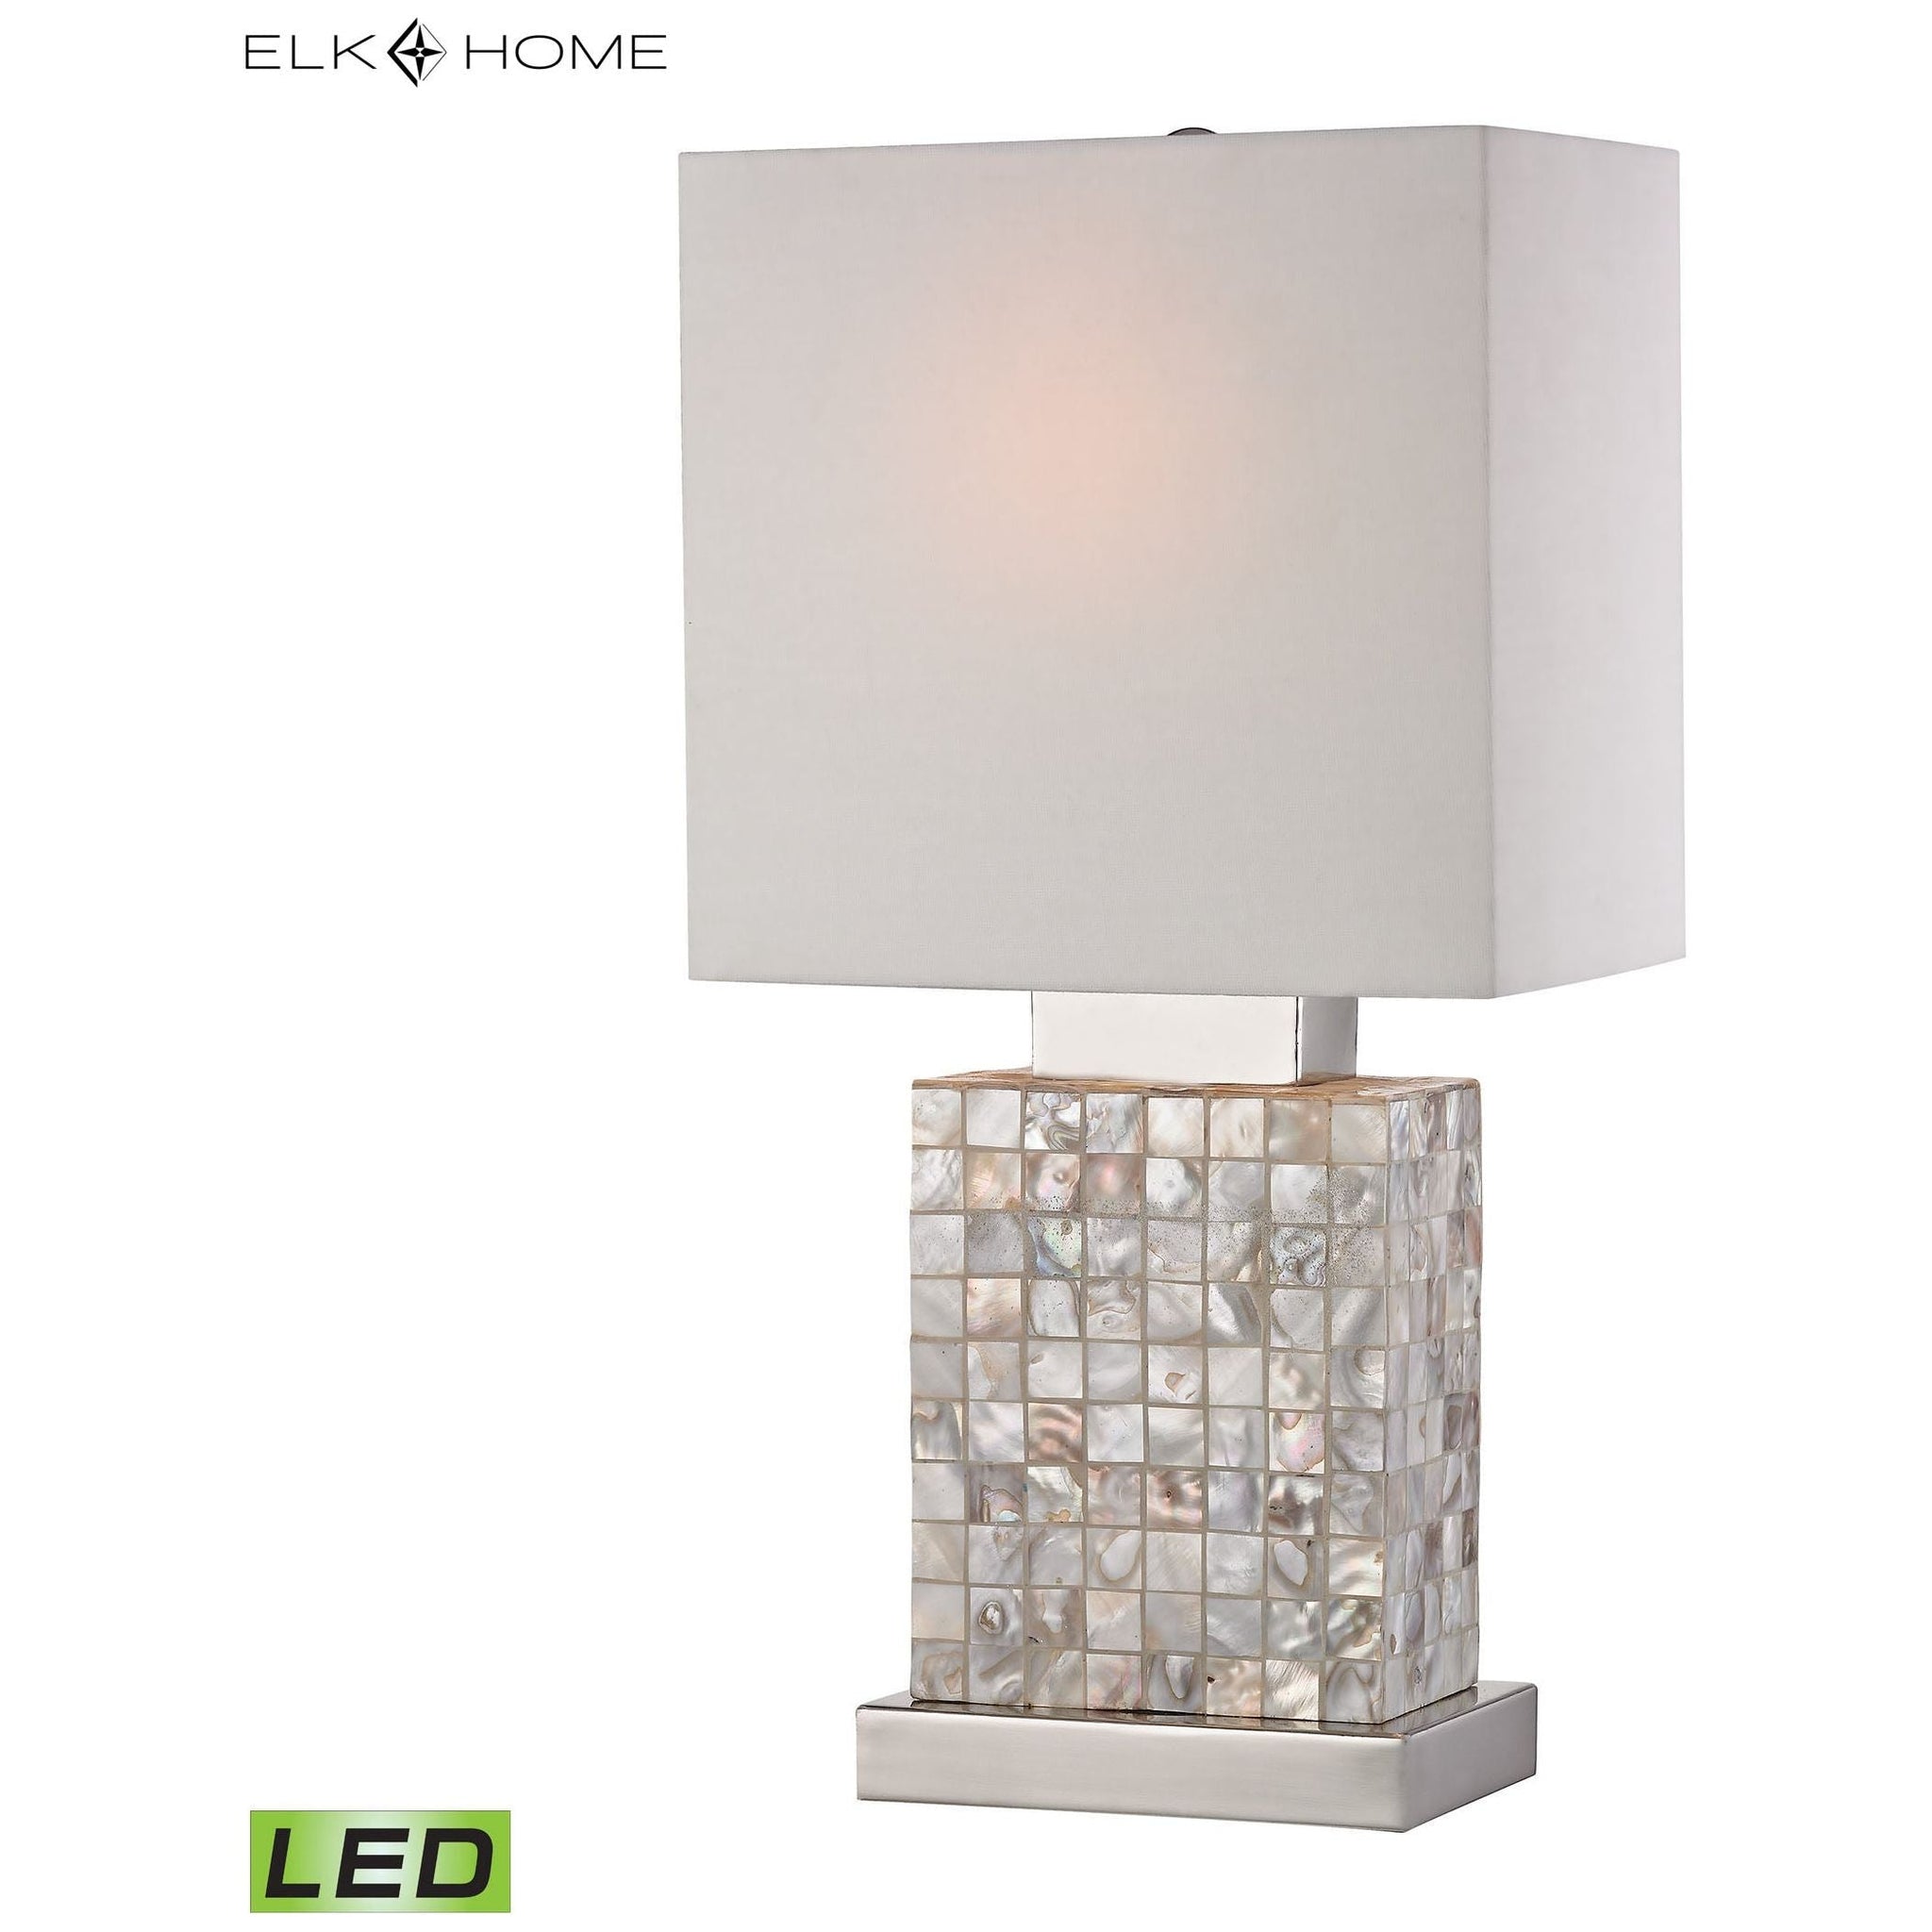 Sterling 17" High 1-Light Table Lamp